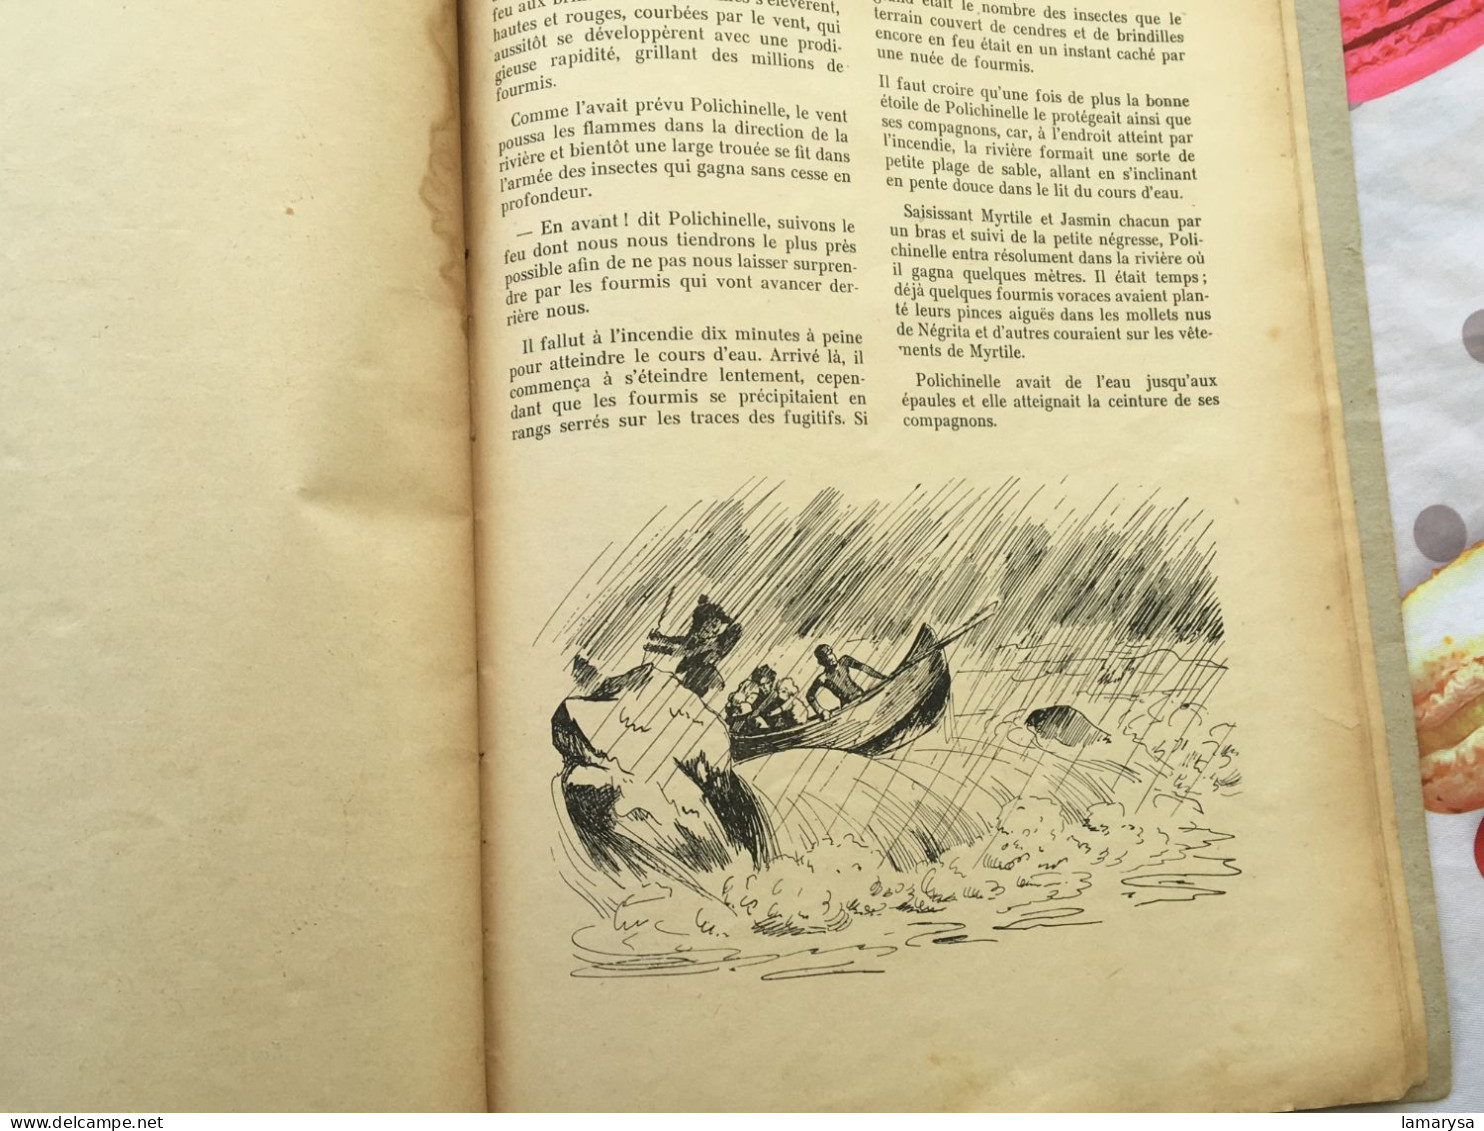 1942 Collector Les Aventures de Polichinelle Livre pour enfant de :Jacques Ribière-France Editions-revue originale   -